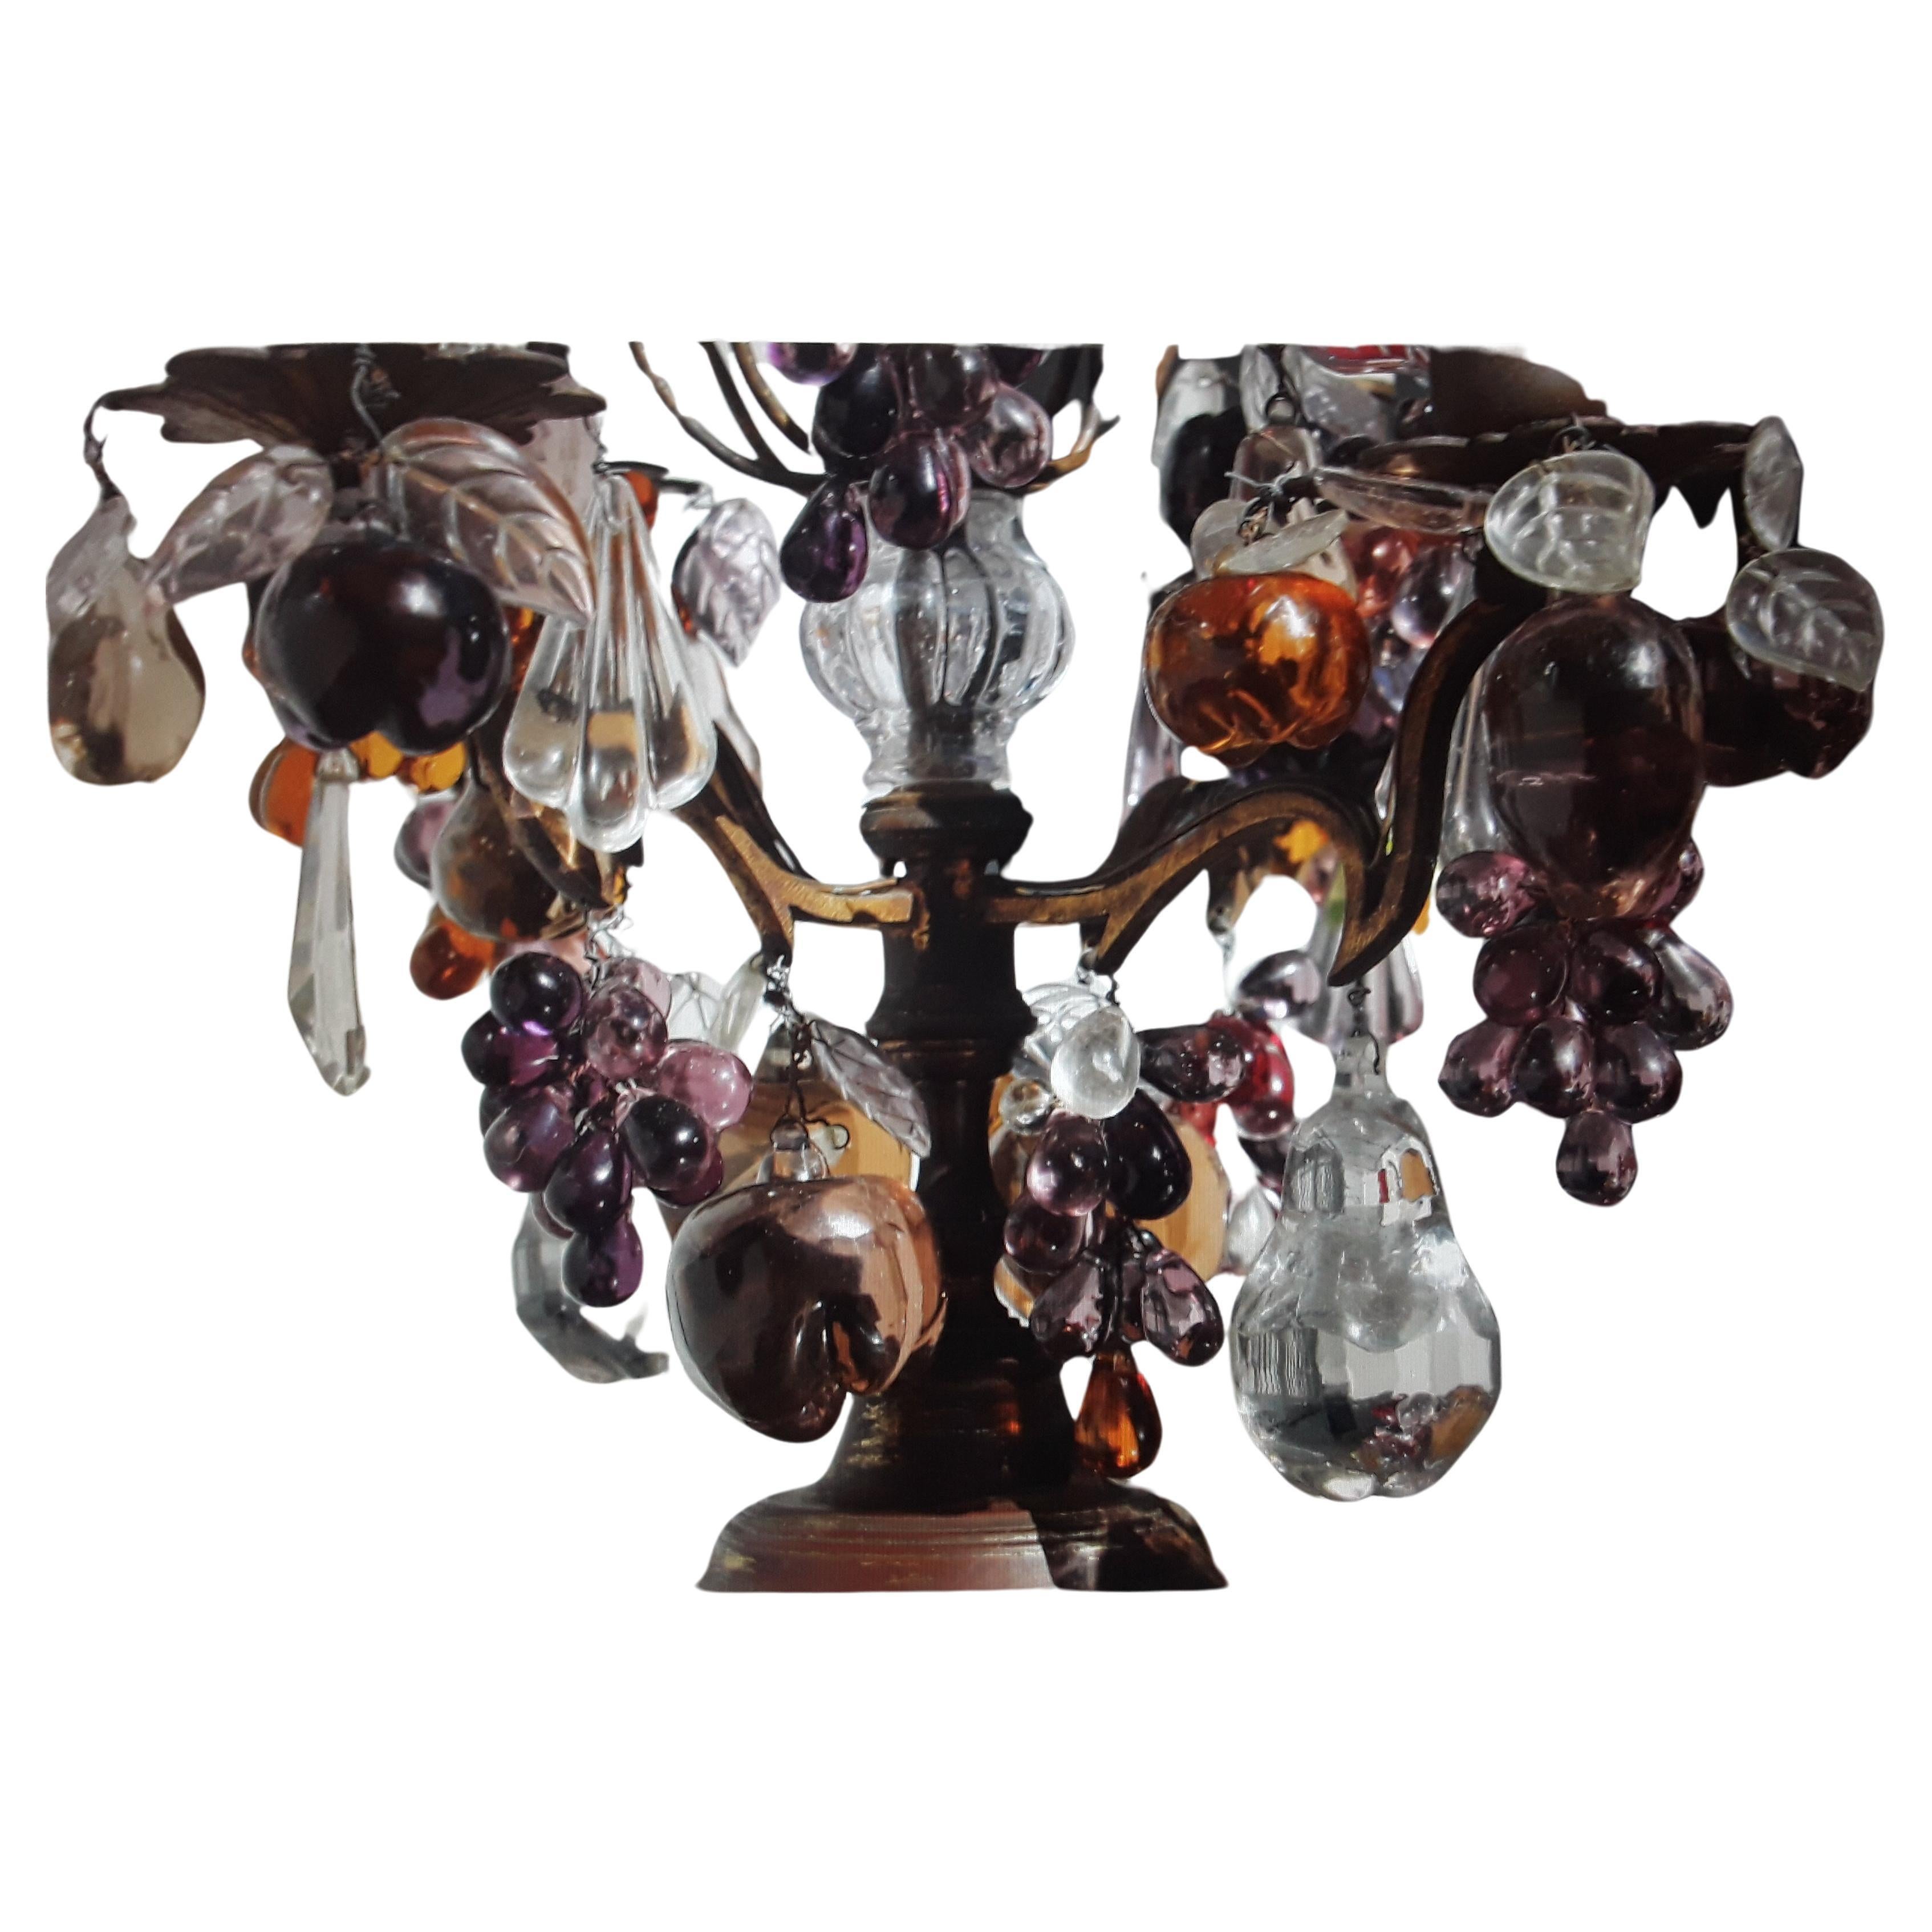 c1880 Lampe de table/ Girandole en bronze de style Louis XV chargée de nombreux fruits en cristal de Murano. Cette lampe, désormais électrifiée, est stupéfiante. Veuillez regarder attentivement les photos, elles décrivent bien la situation.